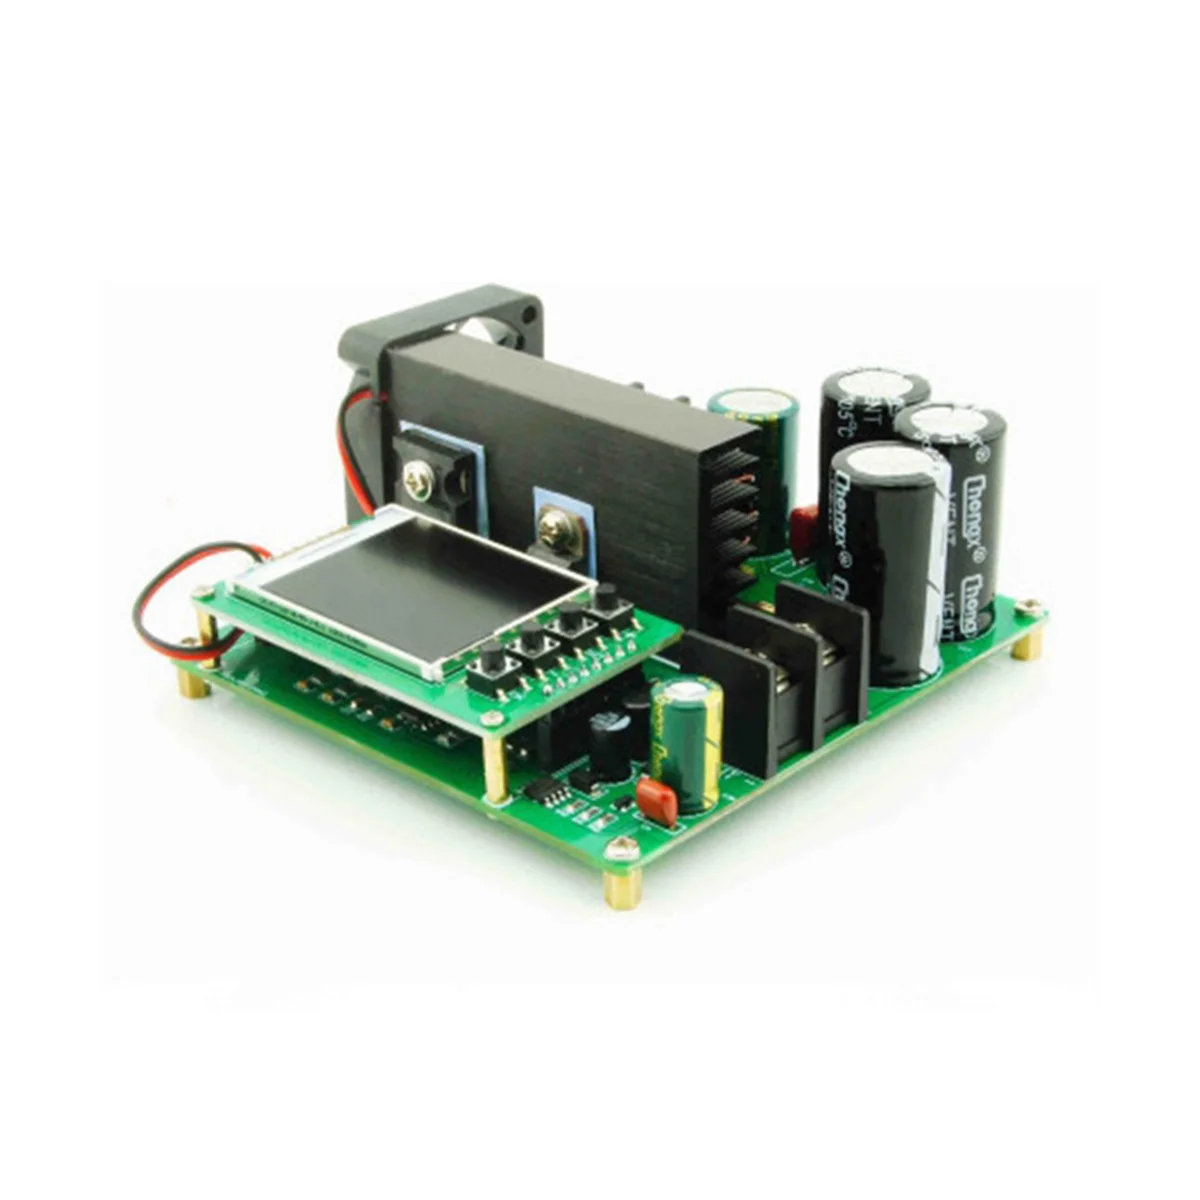 

BST900W дневной дисплей повышающий преобразователь с высокой точностью 9-60 В до 10-120 В постоянного тока, Регулятор модуля питания